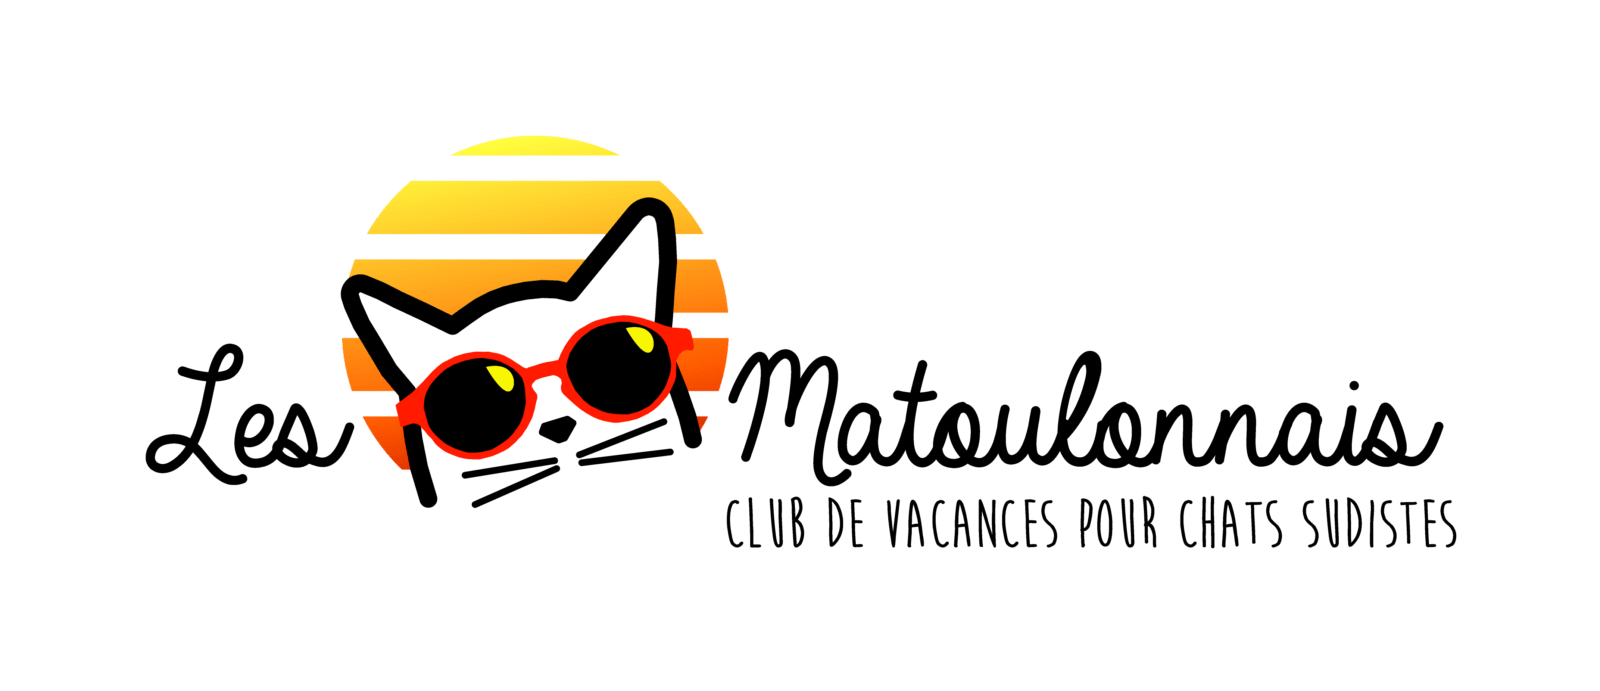 Les Matoulonnais